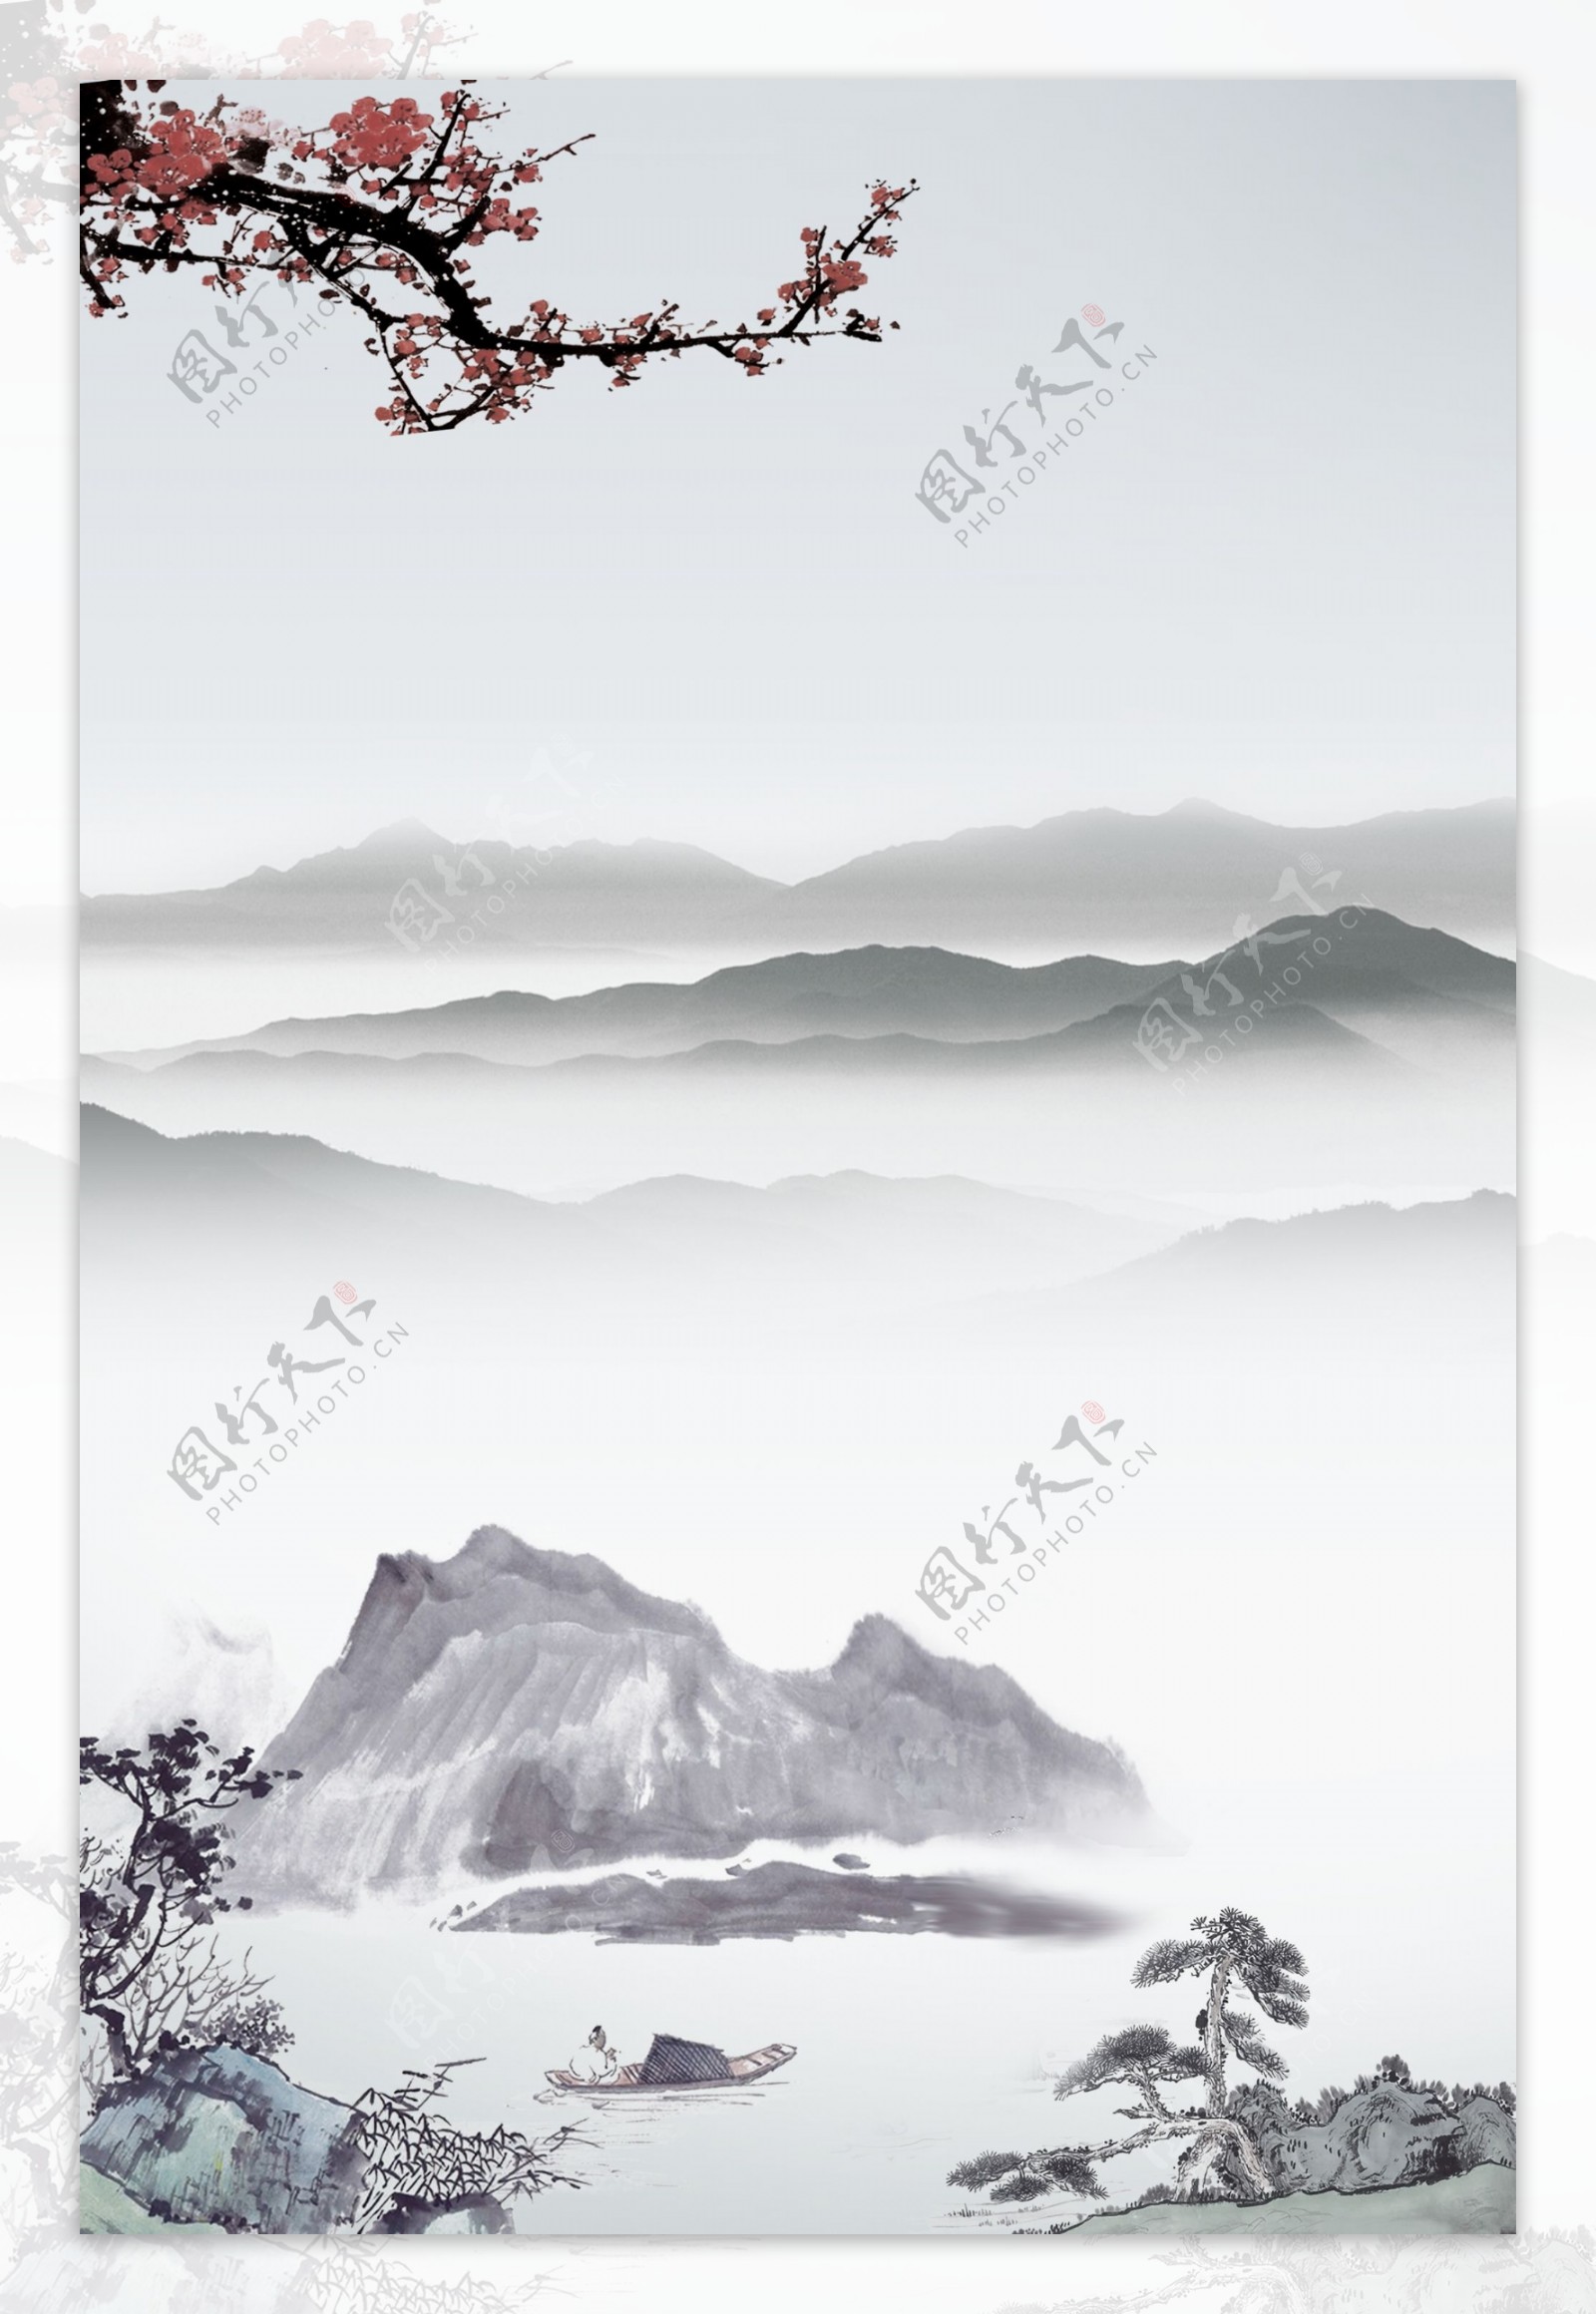 中国风复古水墨山水画背景